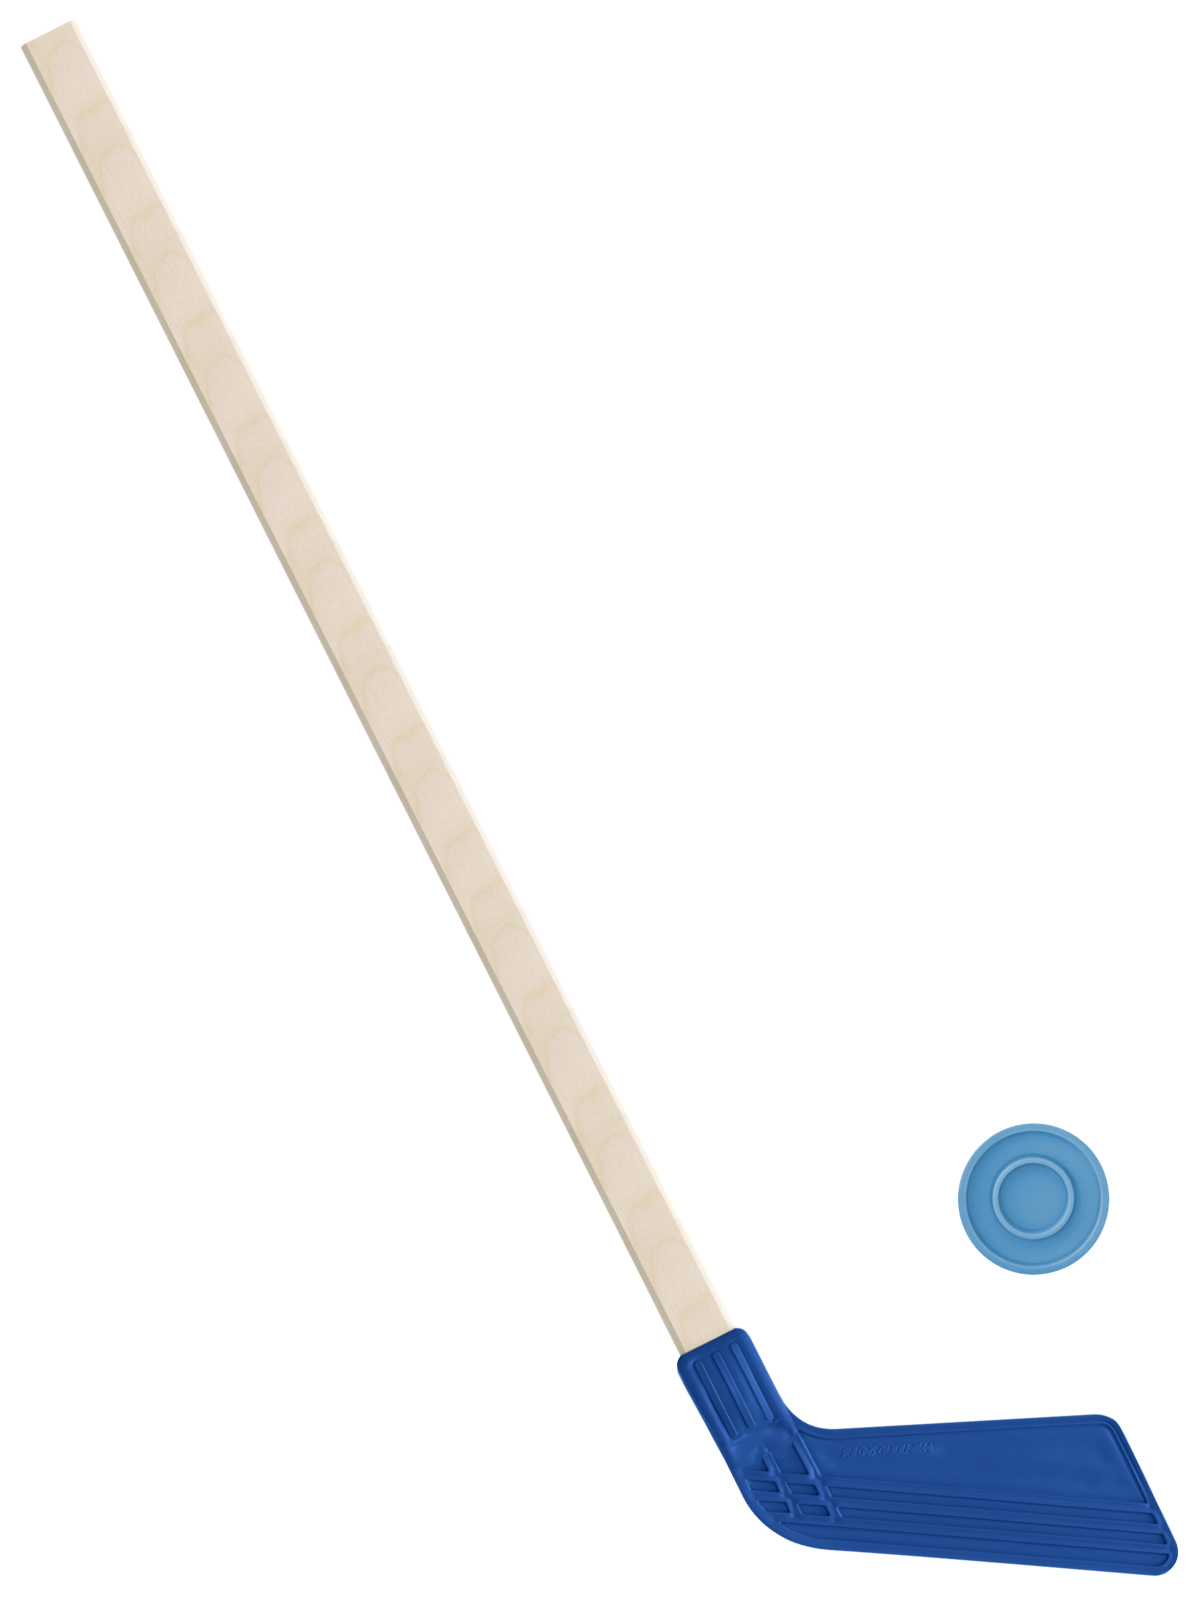 Детский хоккейный набор Задира-плюс, клюшка хоккейная 80 см (синяя)+шайба клюшка с мячом набор 77 см d 7 см микс